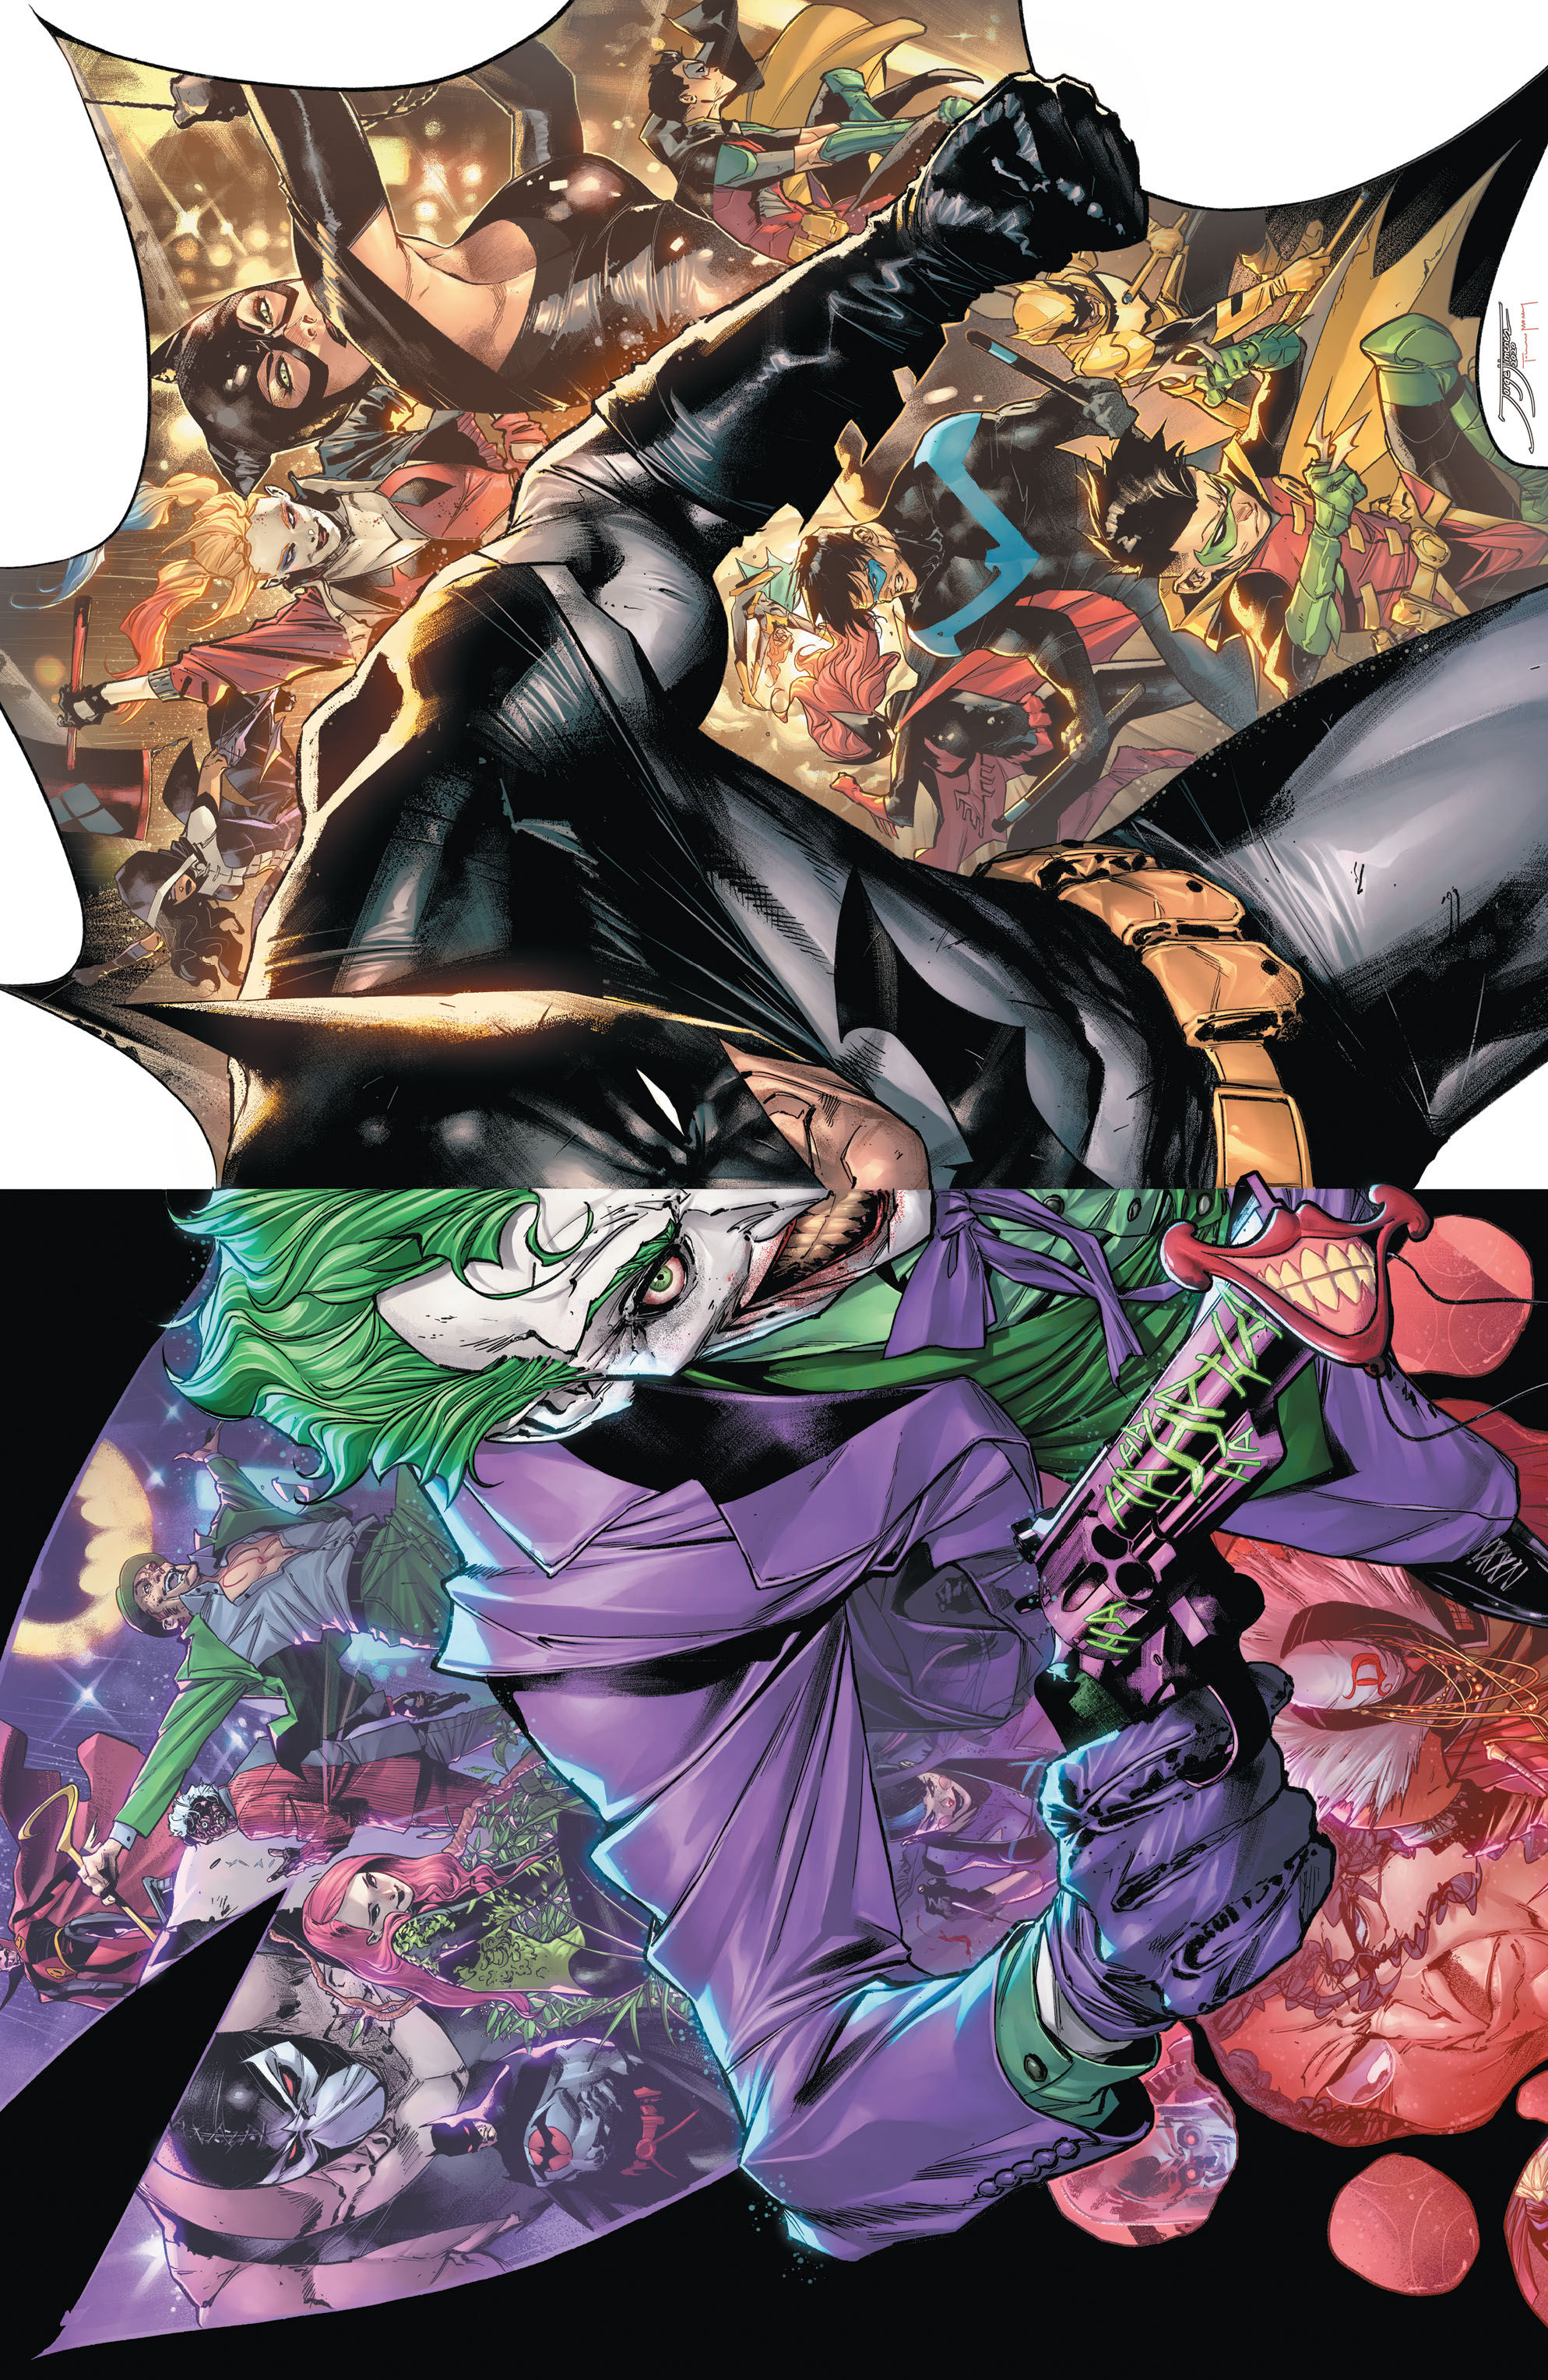 General 1988x3056 DC Comics comics Joker Batman (1989) comic art comic character Batman logo villains Detective-Comics bodysuit superhero digital art Batman (2021)